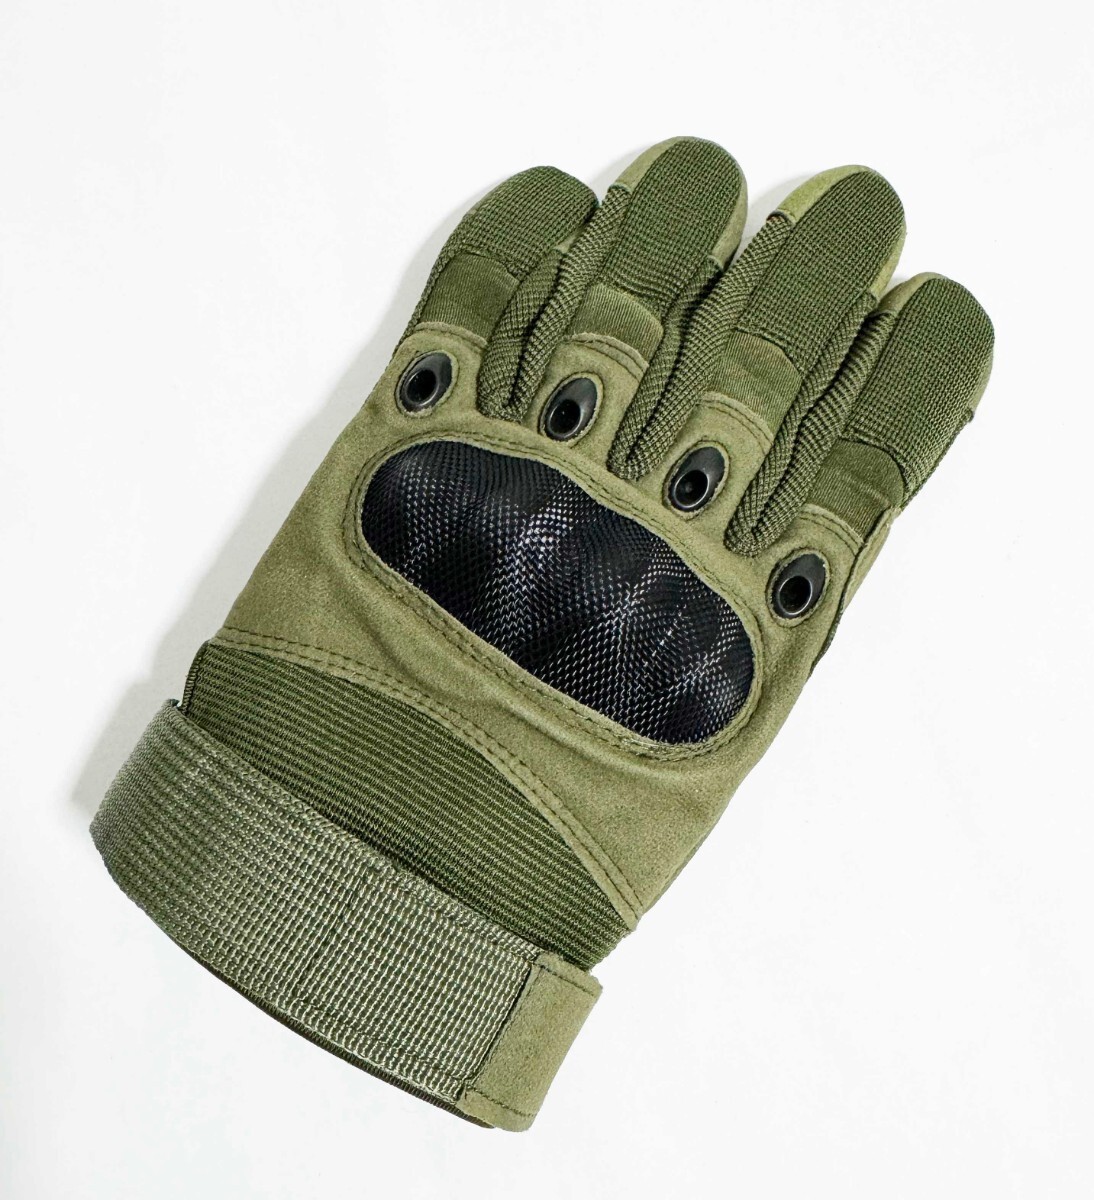 【Yes.Sir shop】 ロシア軍 グローブ 手袋 XLサイズ OD グリーン 最新版 新品未使用_画像4